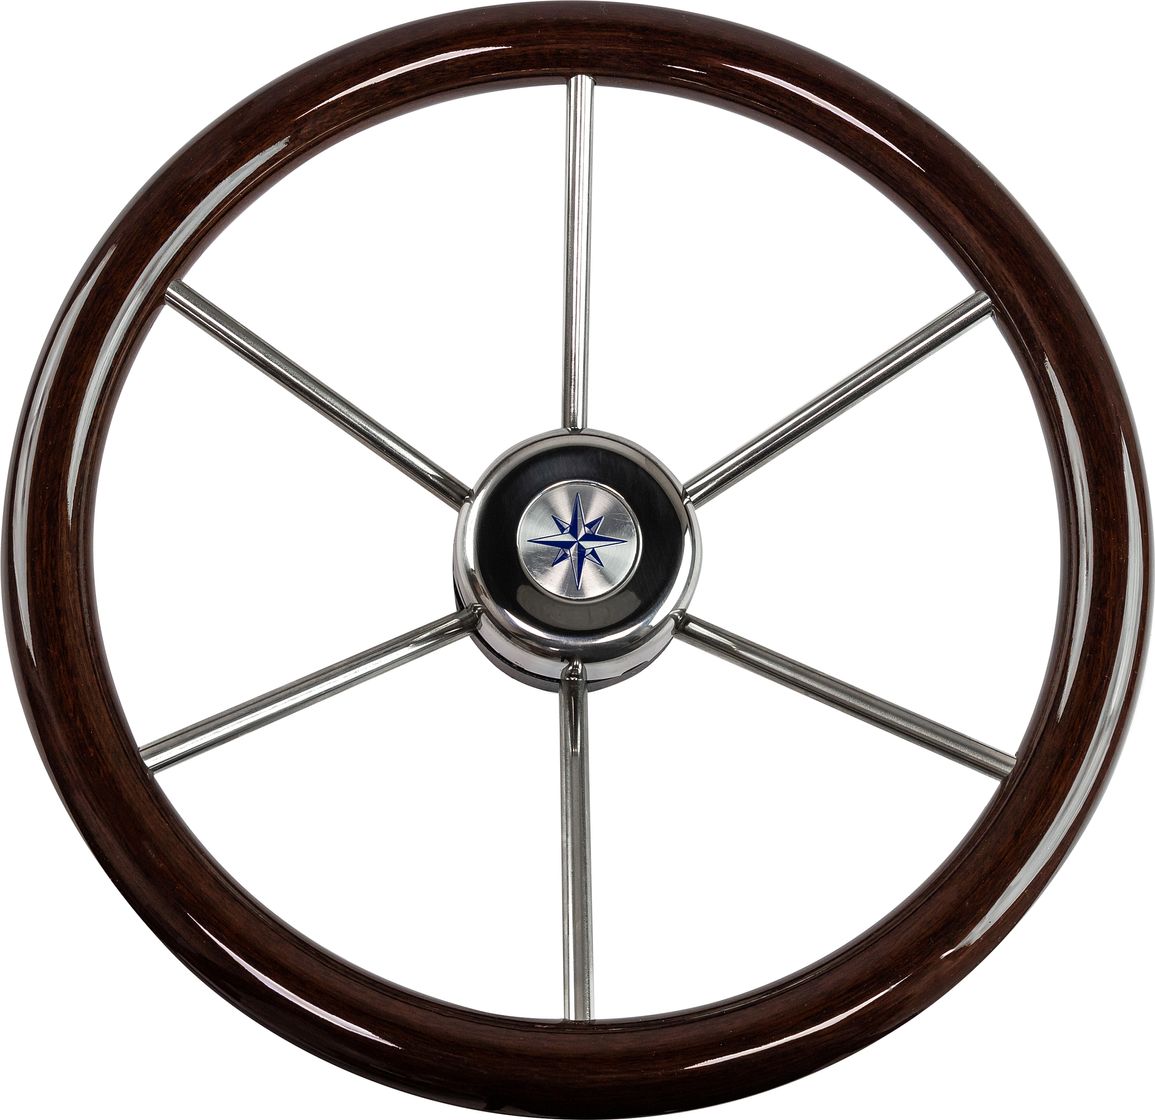 Рулевое колесо LEADER WOOD деревянный обод серебряные спицы д. 390 мм VN7390-33 рулевое колесо leader tanegum обод серебряные спицы д 360 мм vn7360 01